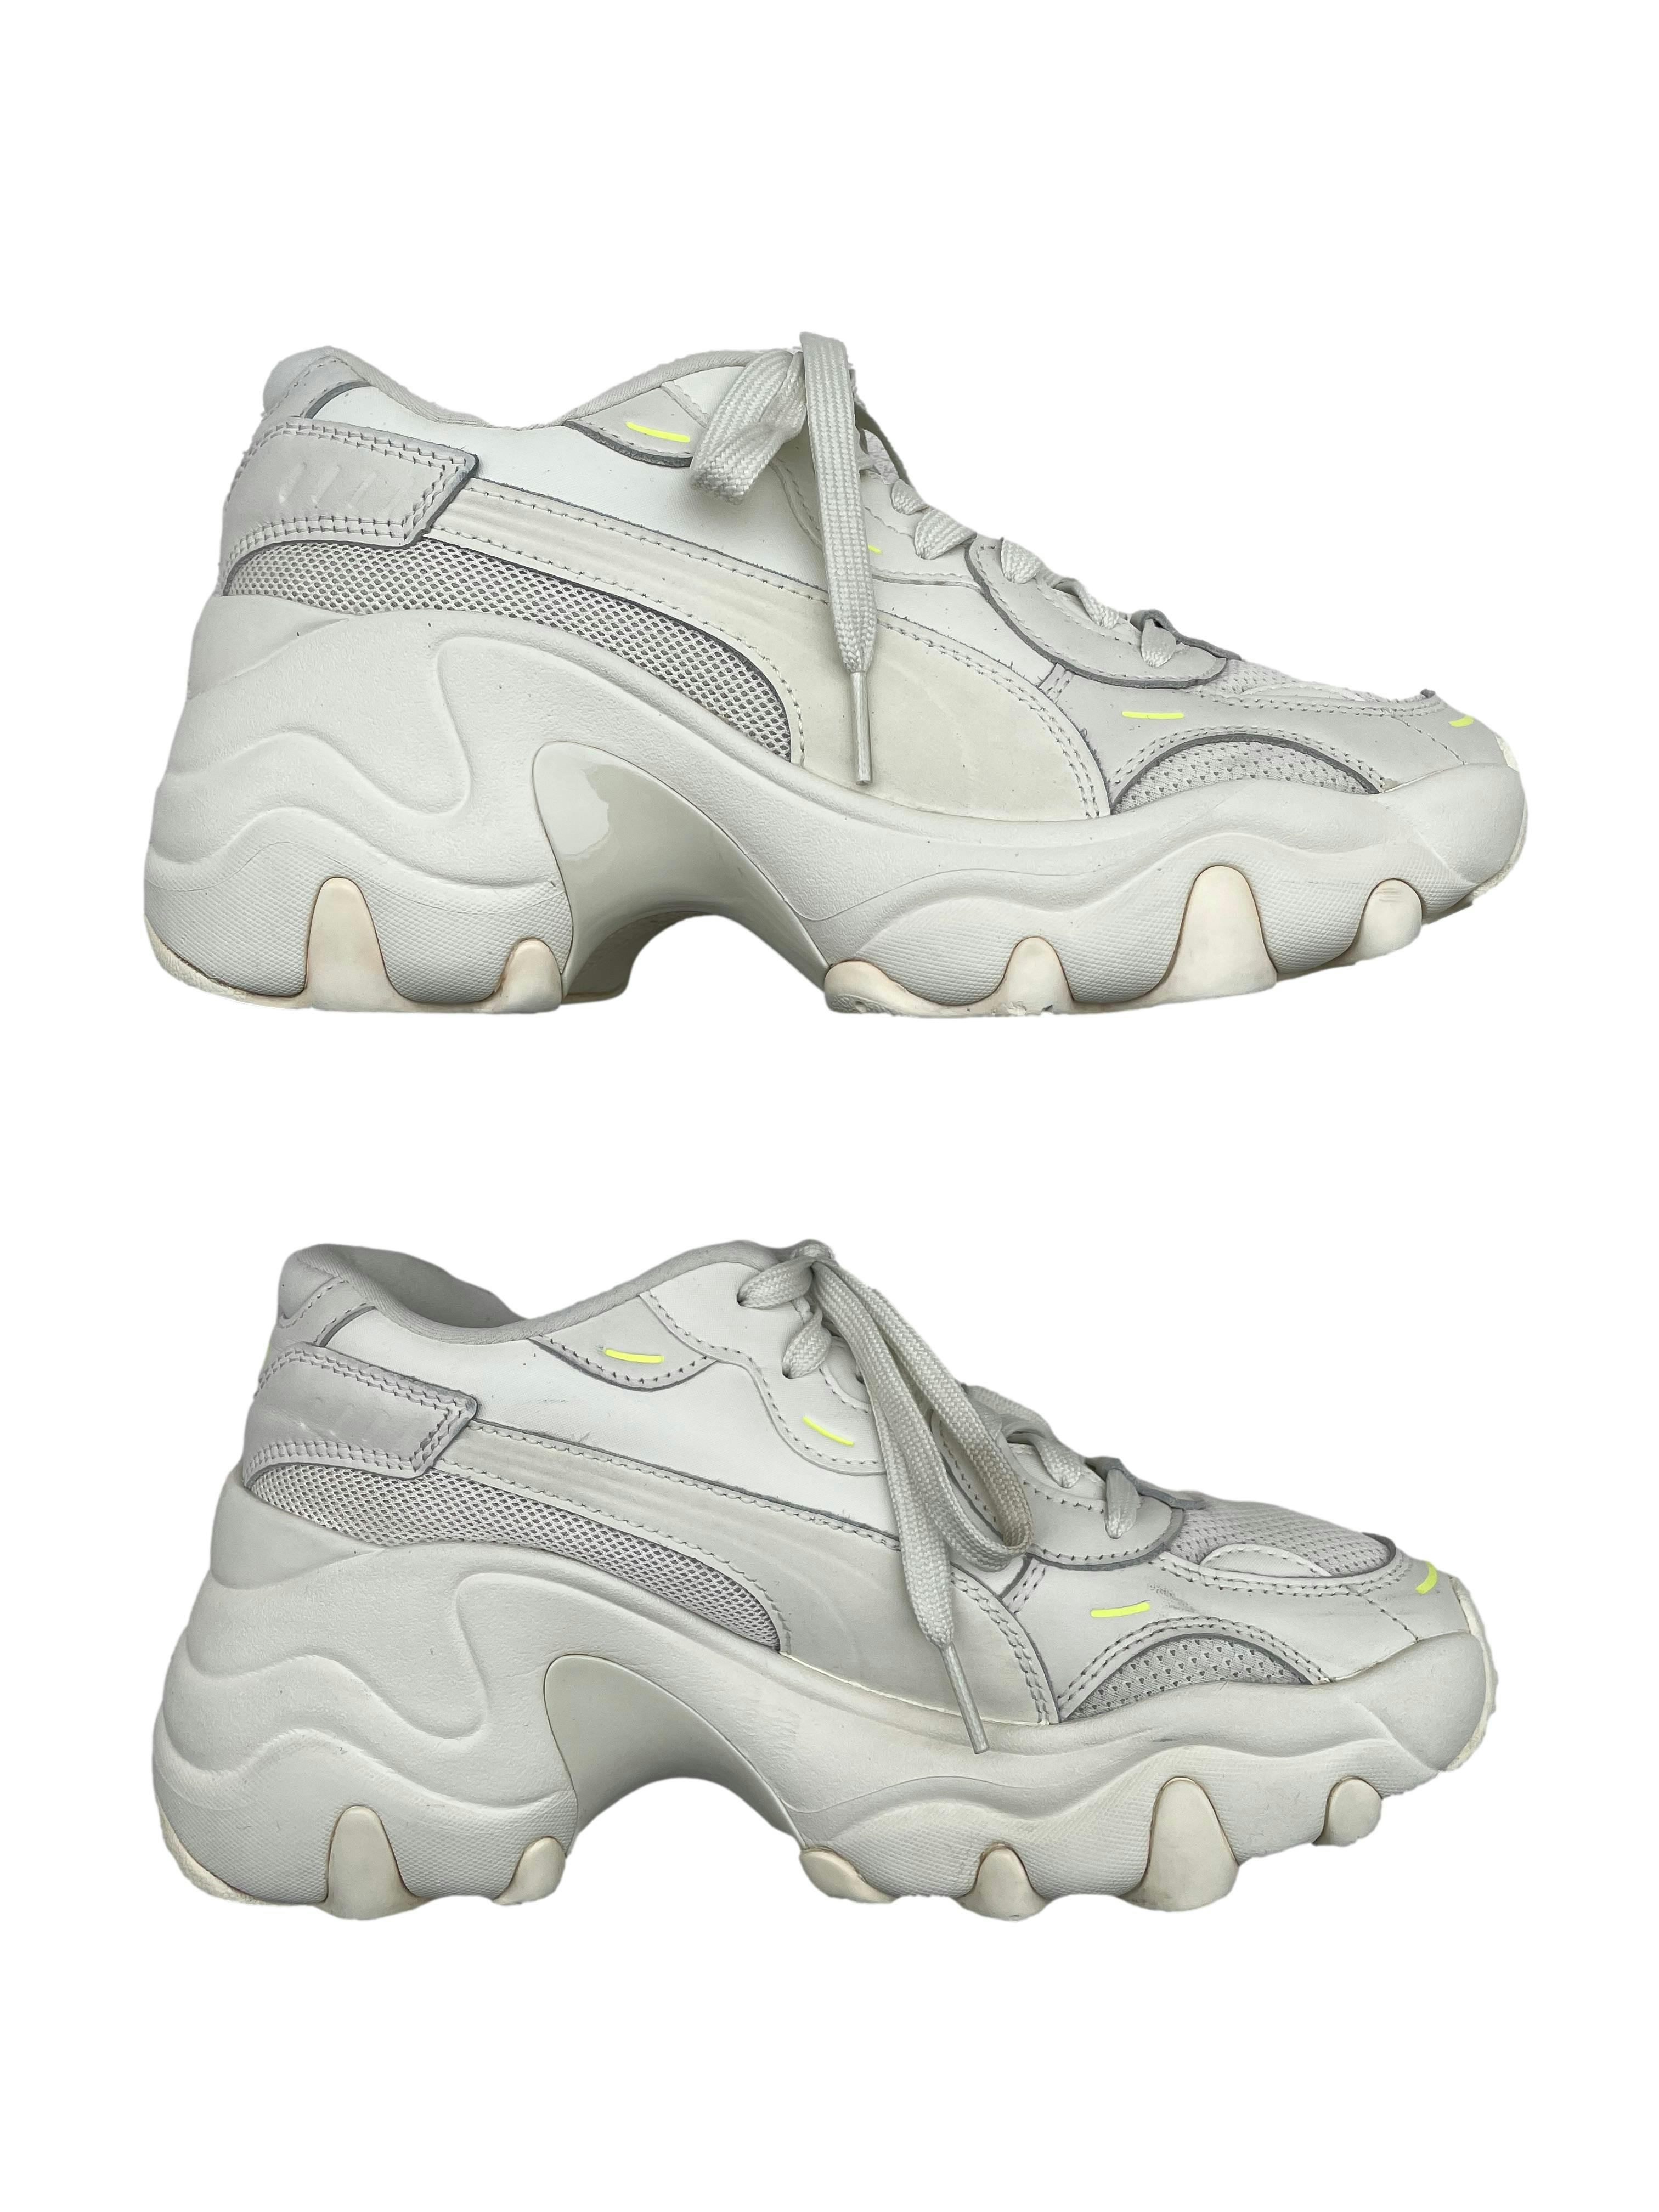 Deshonestidad Roux Torpe Zapatillas Puma blancas con acentos neón, plataforma 5cm. Estado 8/10 | Las  Traperas